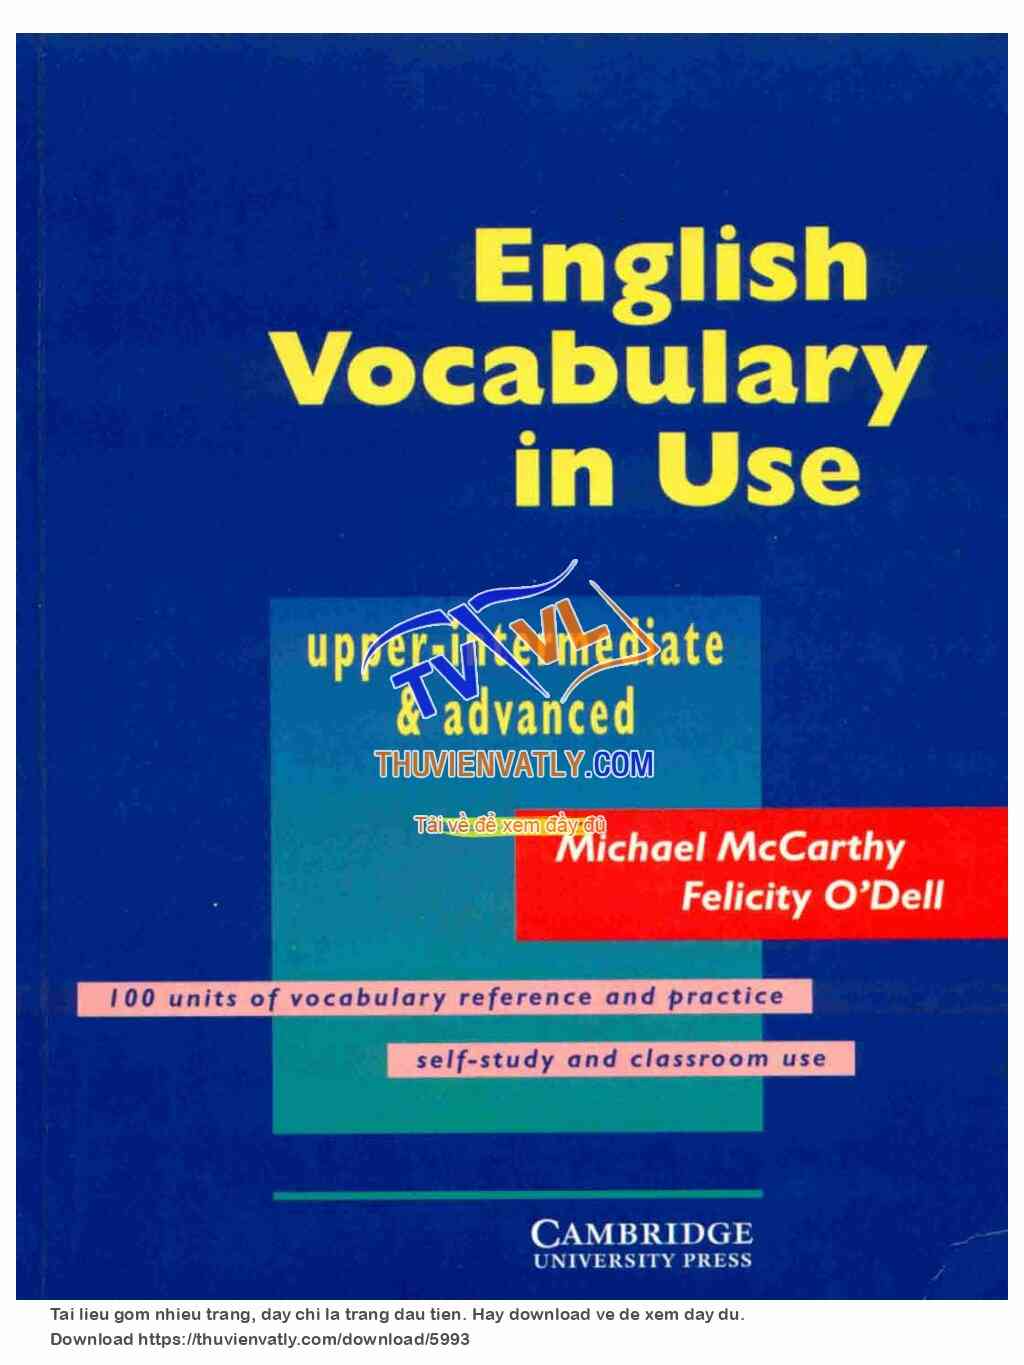 Cambridge English Vocabulary in Use - Upper Intermediate